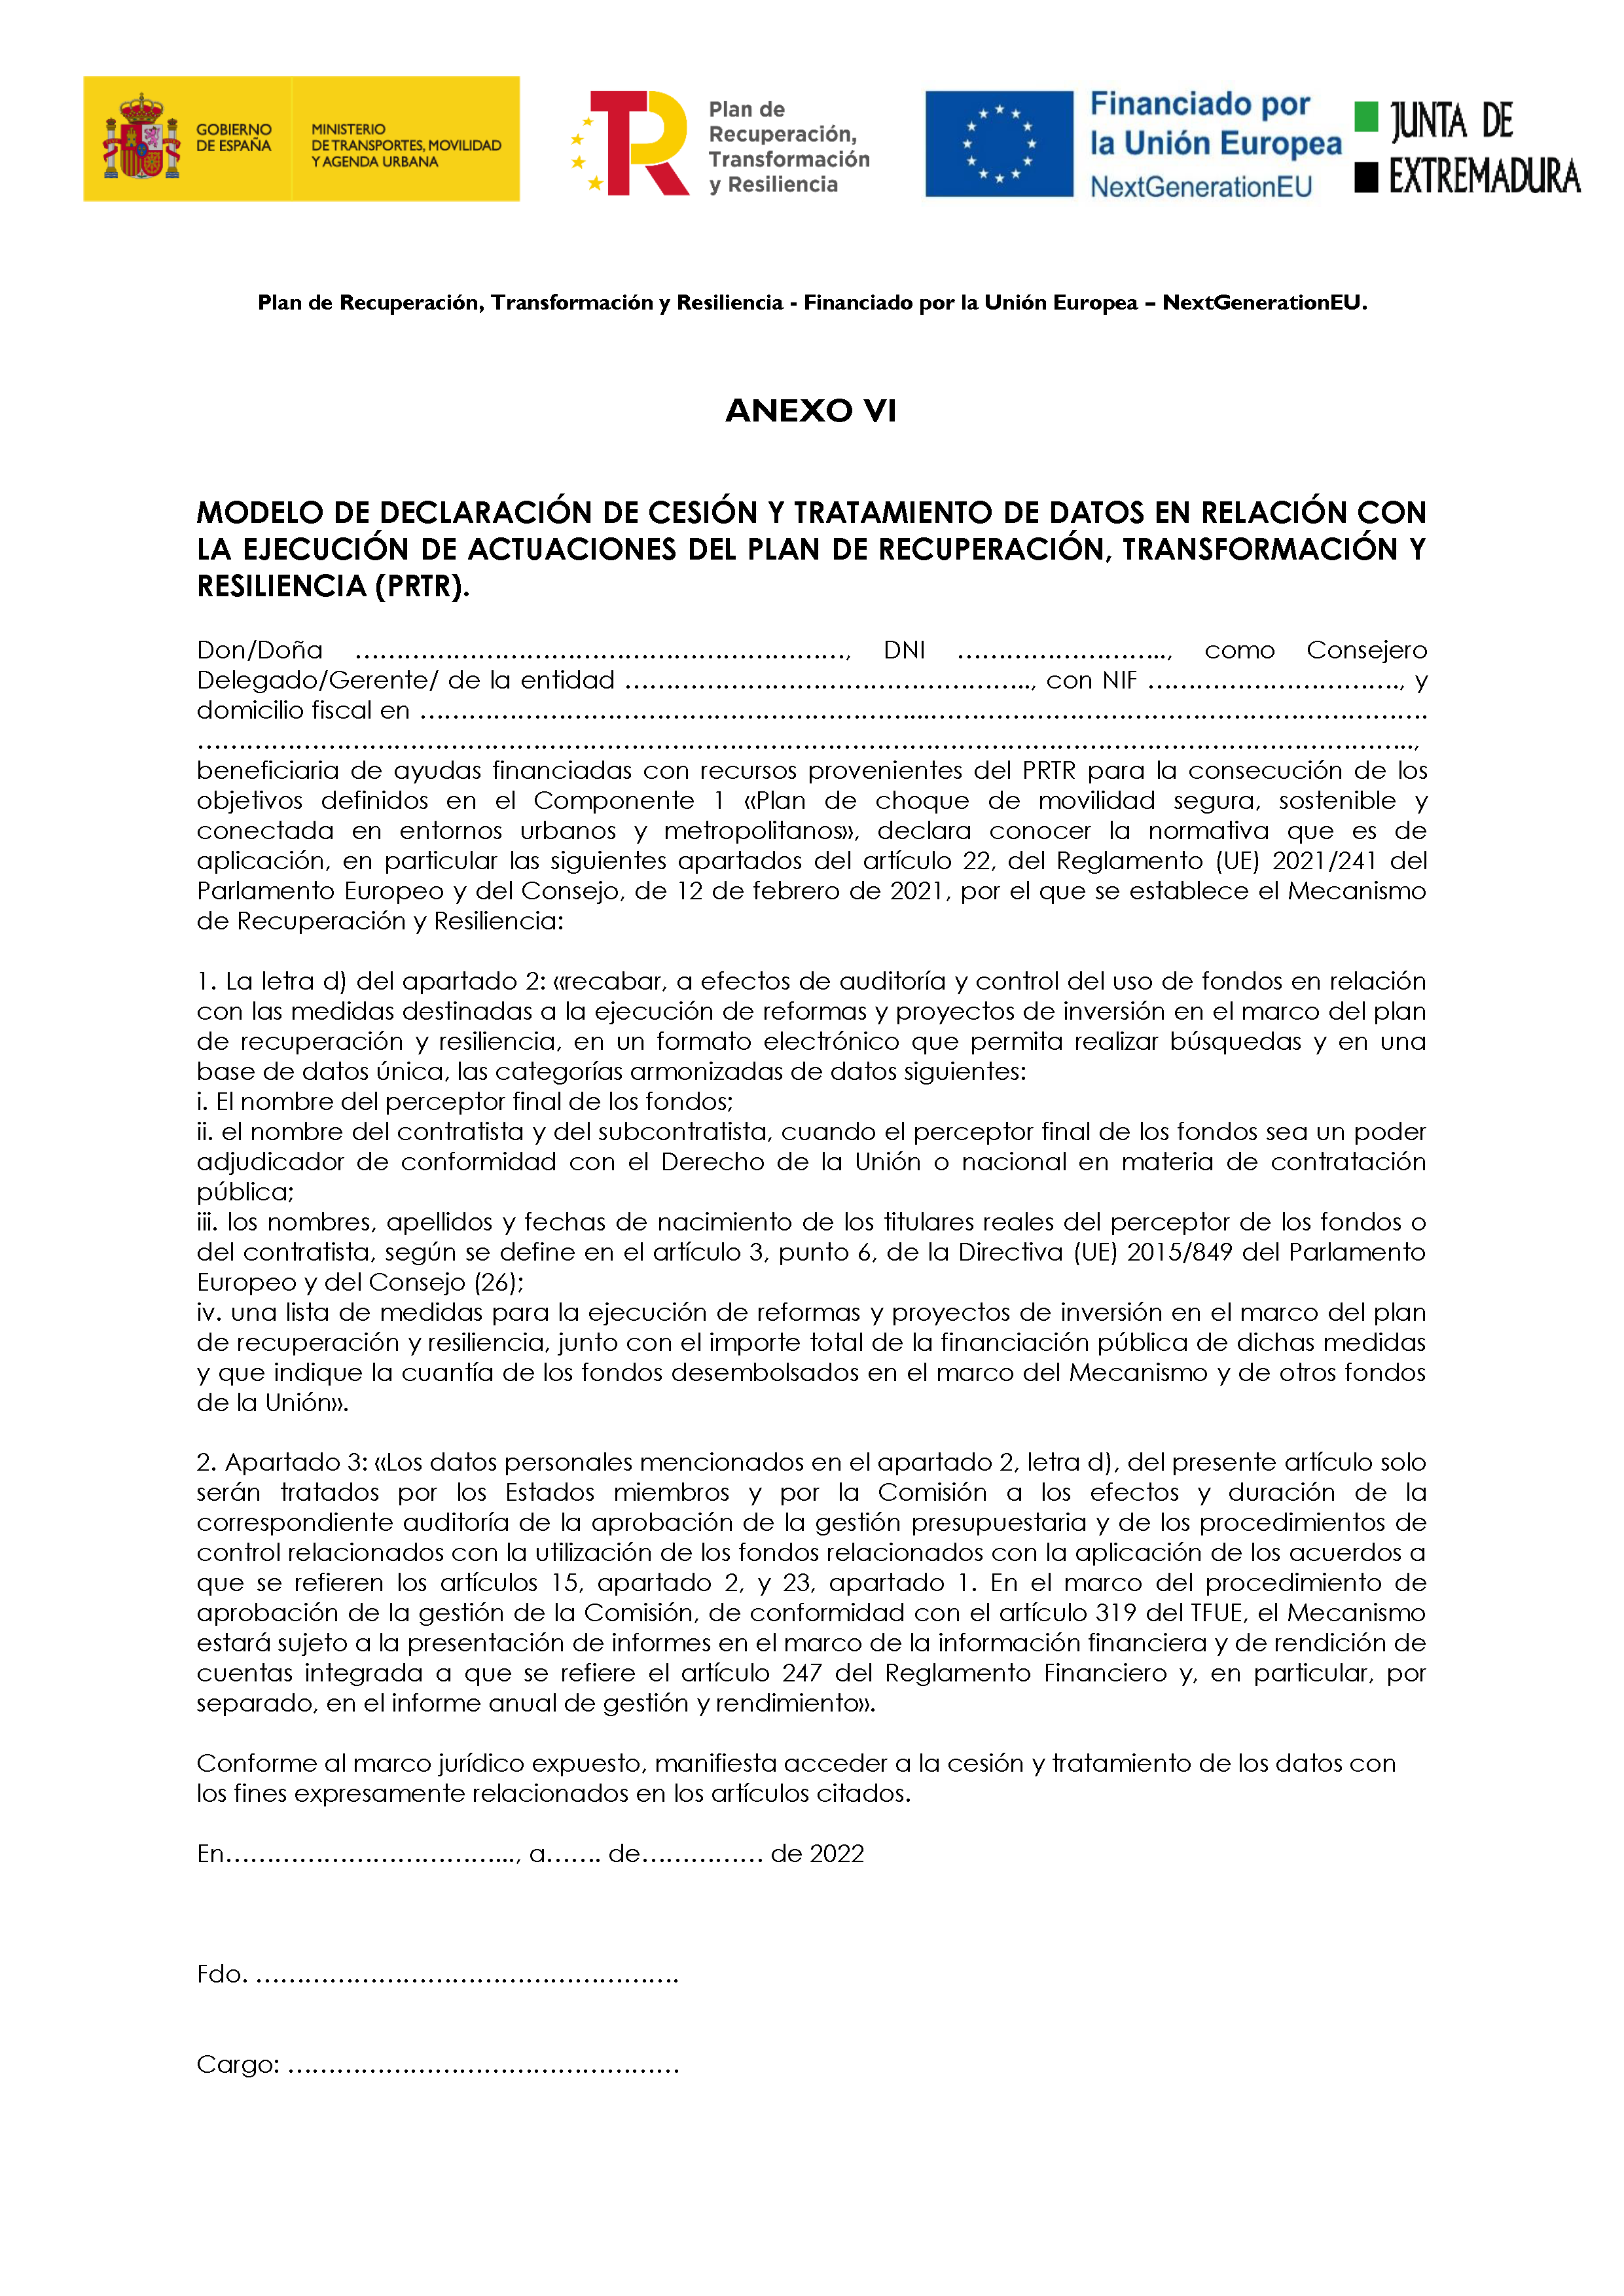 ANEXO VI MODELO DECLARACION DE CESION Y TRATAMIENTO DE DATOS